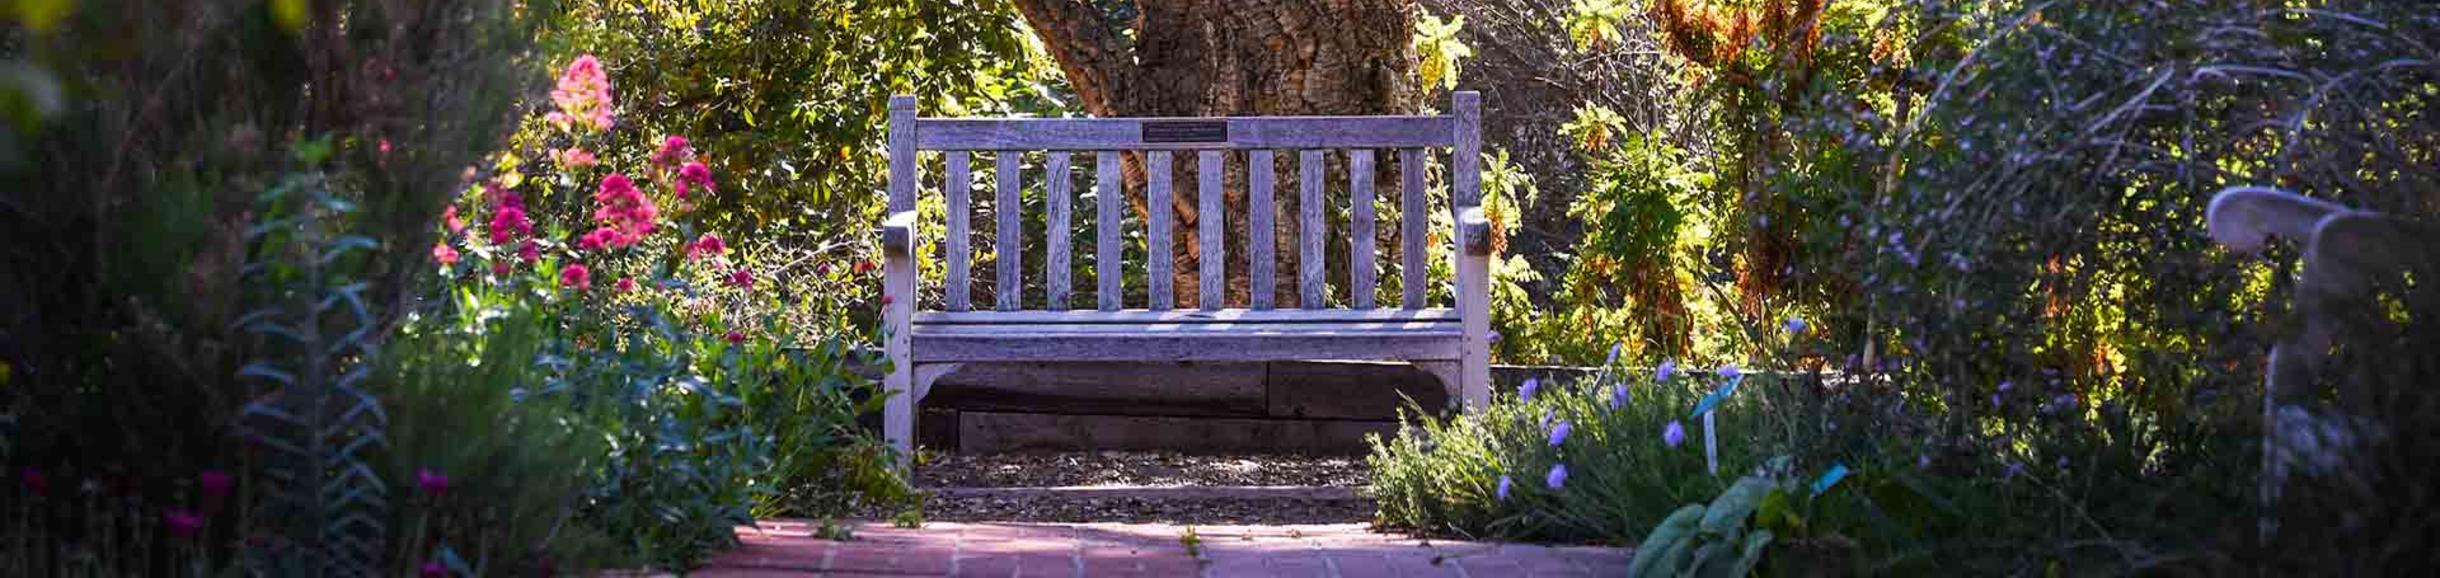 Bench in UCR Botanic Gardens